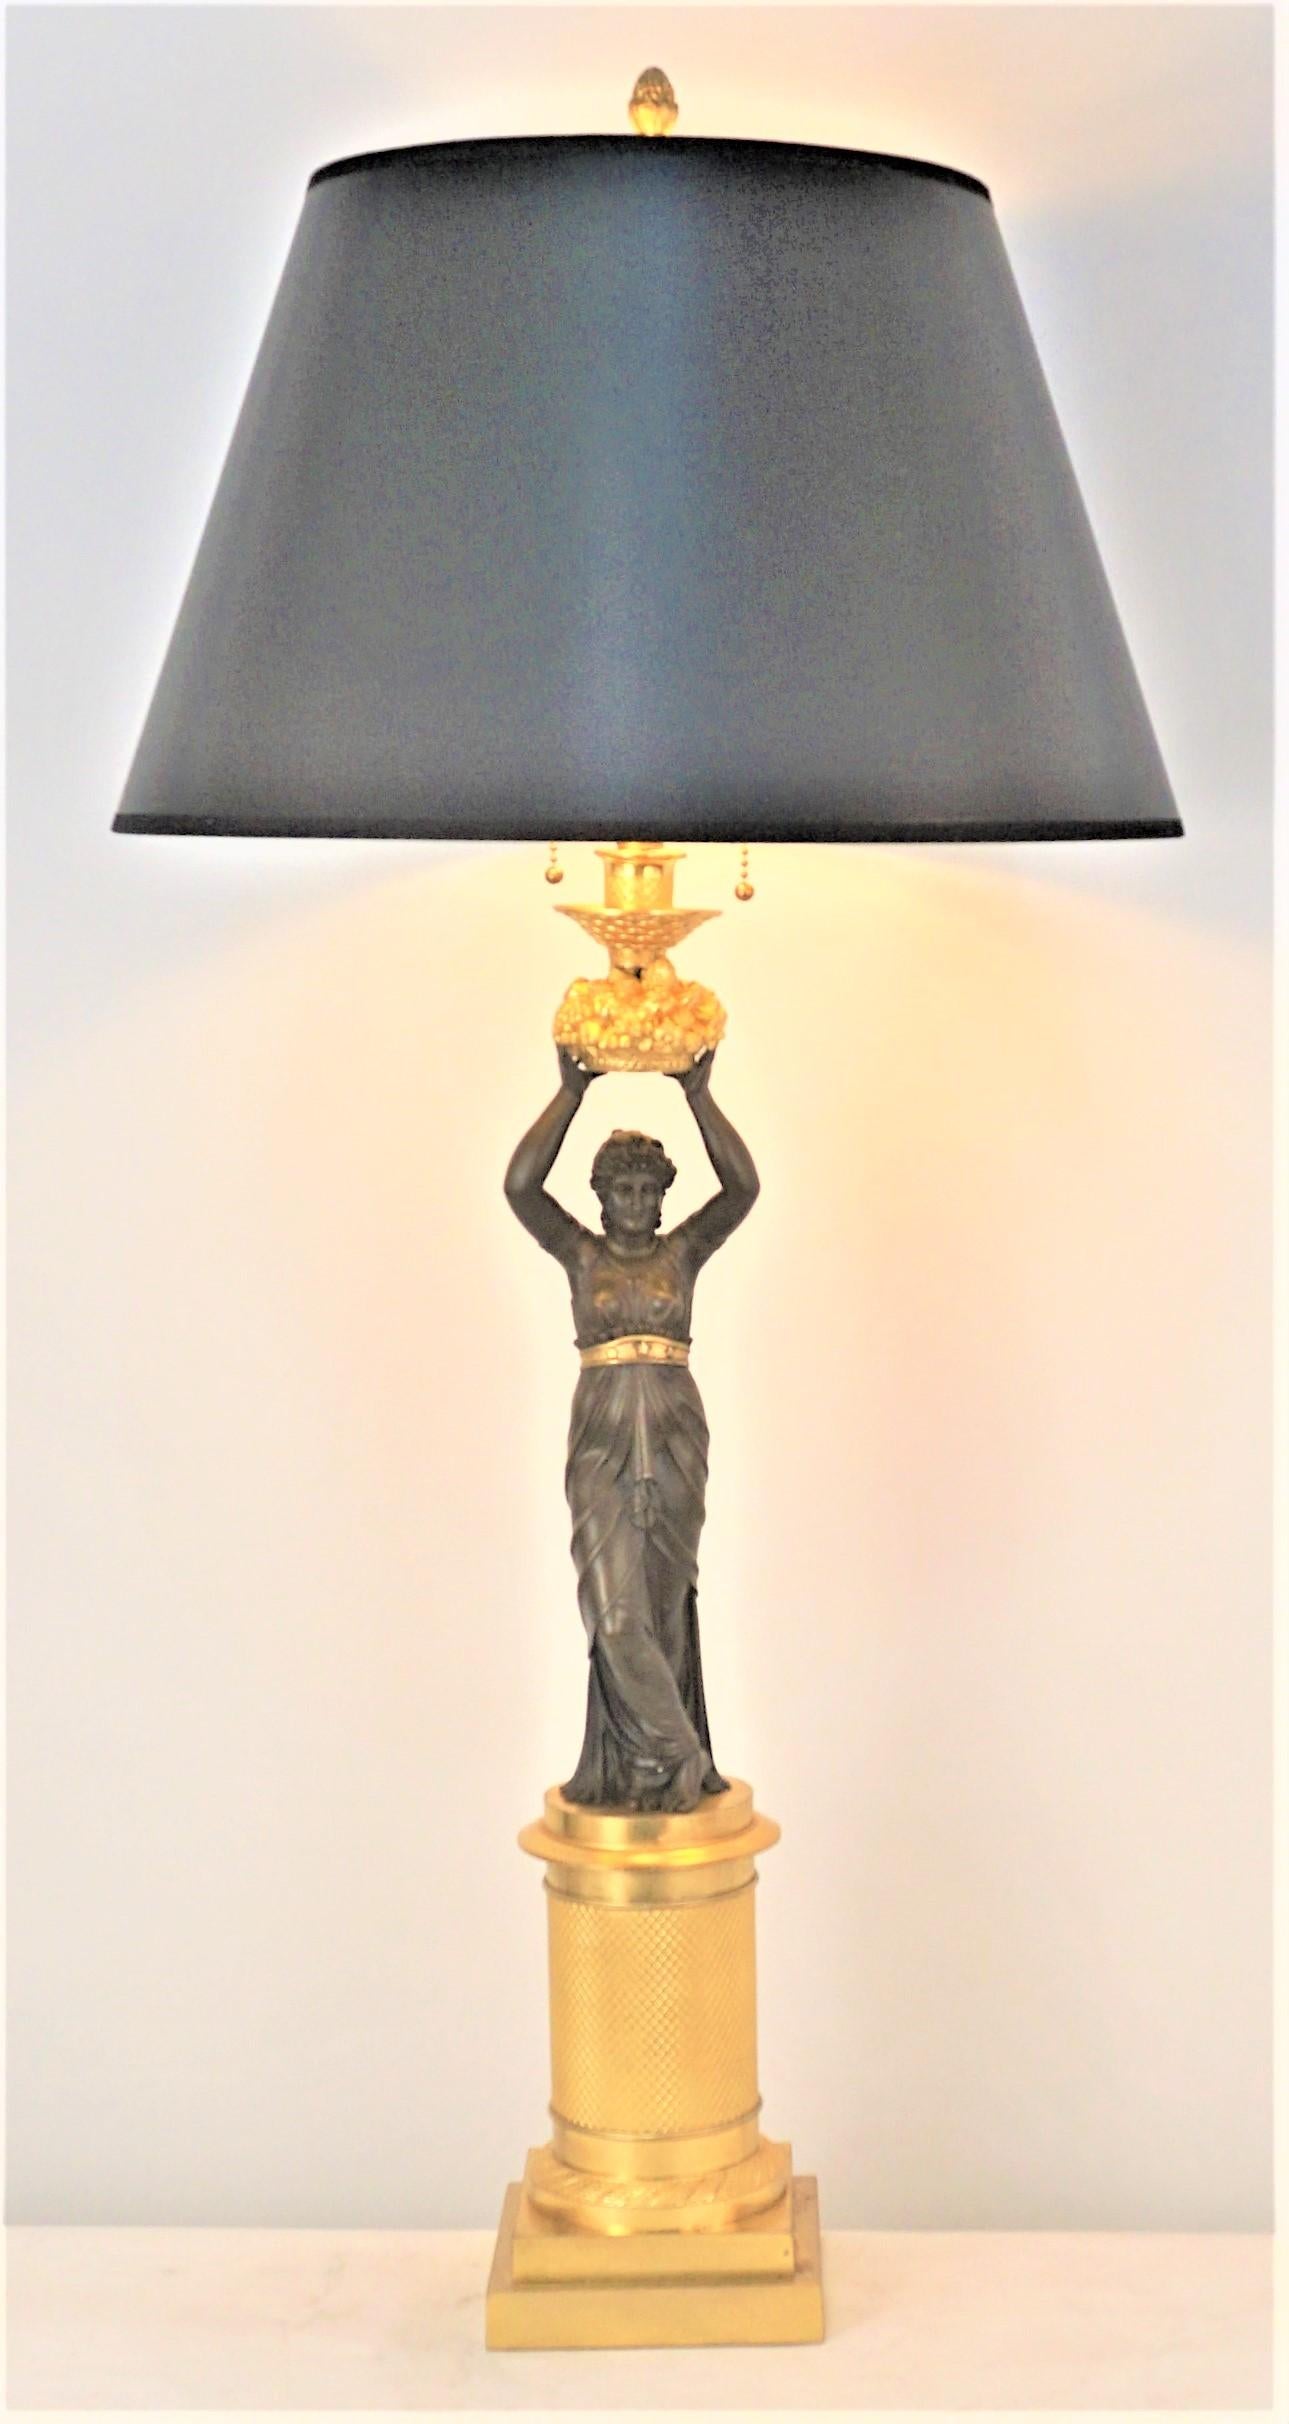 Fantastischer vergoldeter und oxidierter Bronzekandelaber aus dem 19. Jahrhundert, der mit doppelten Zugkettenfassungen elektrifiziert wurde.
Die Messung umfasst den Lampenschirm.